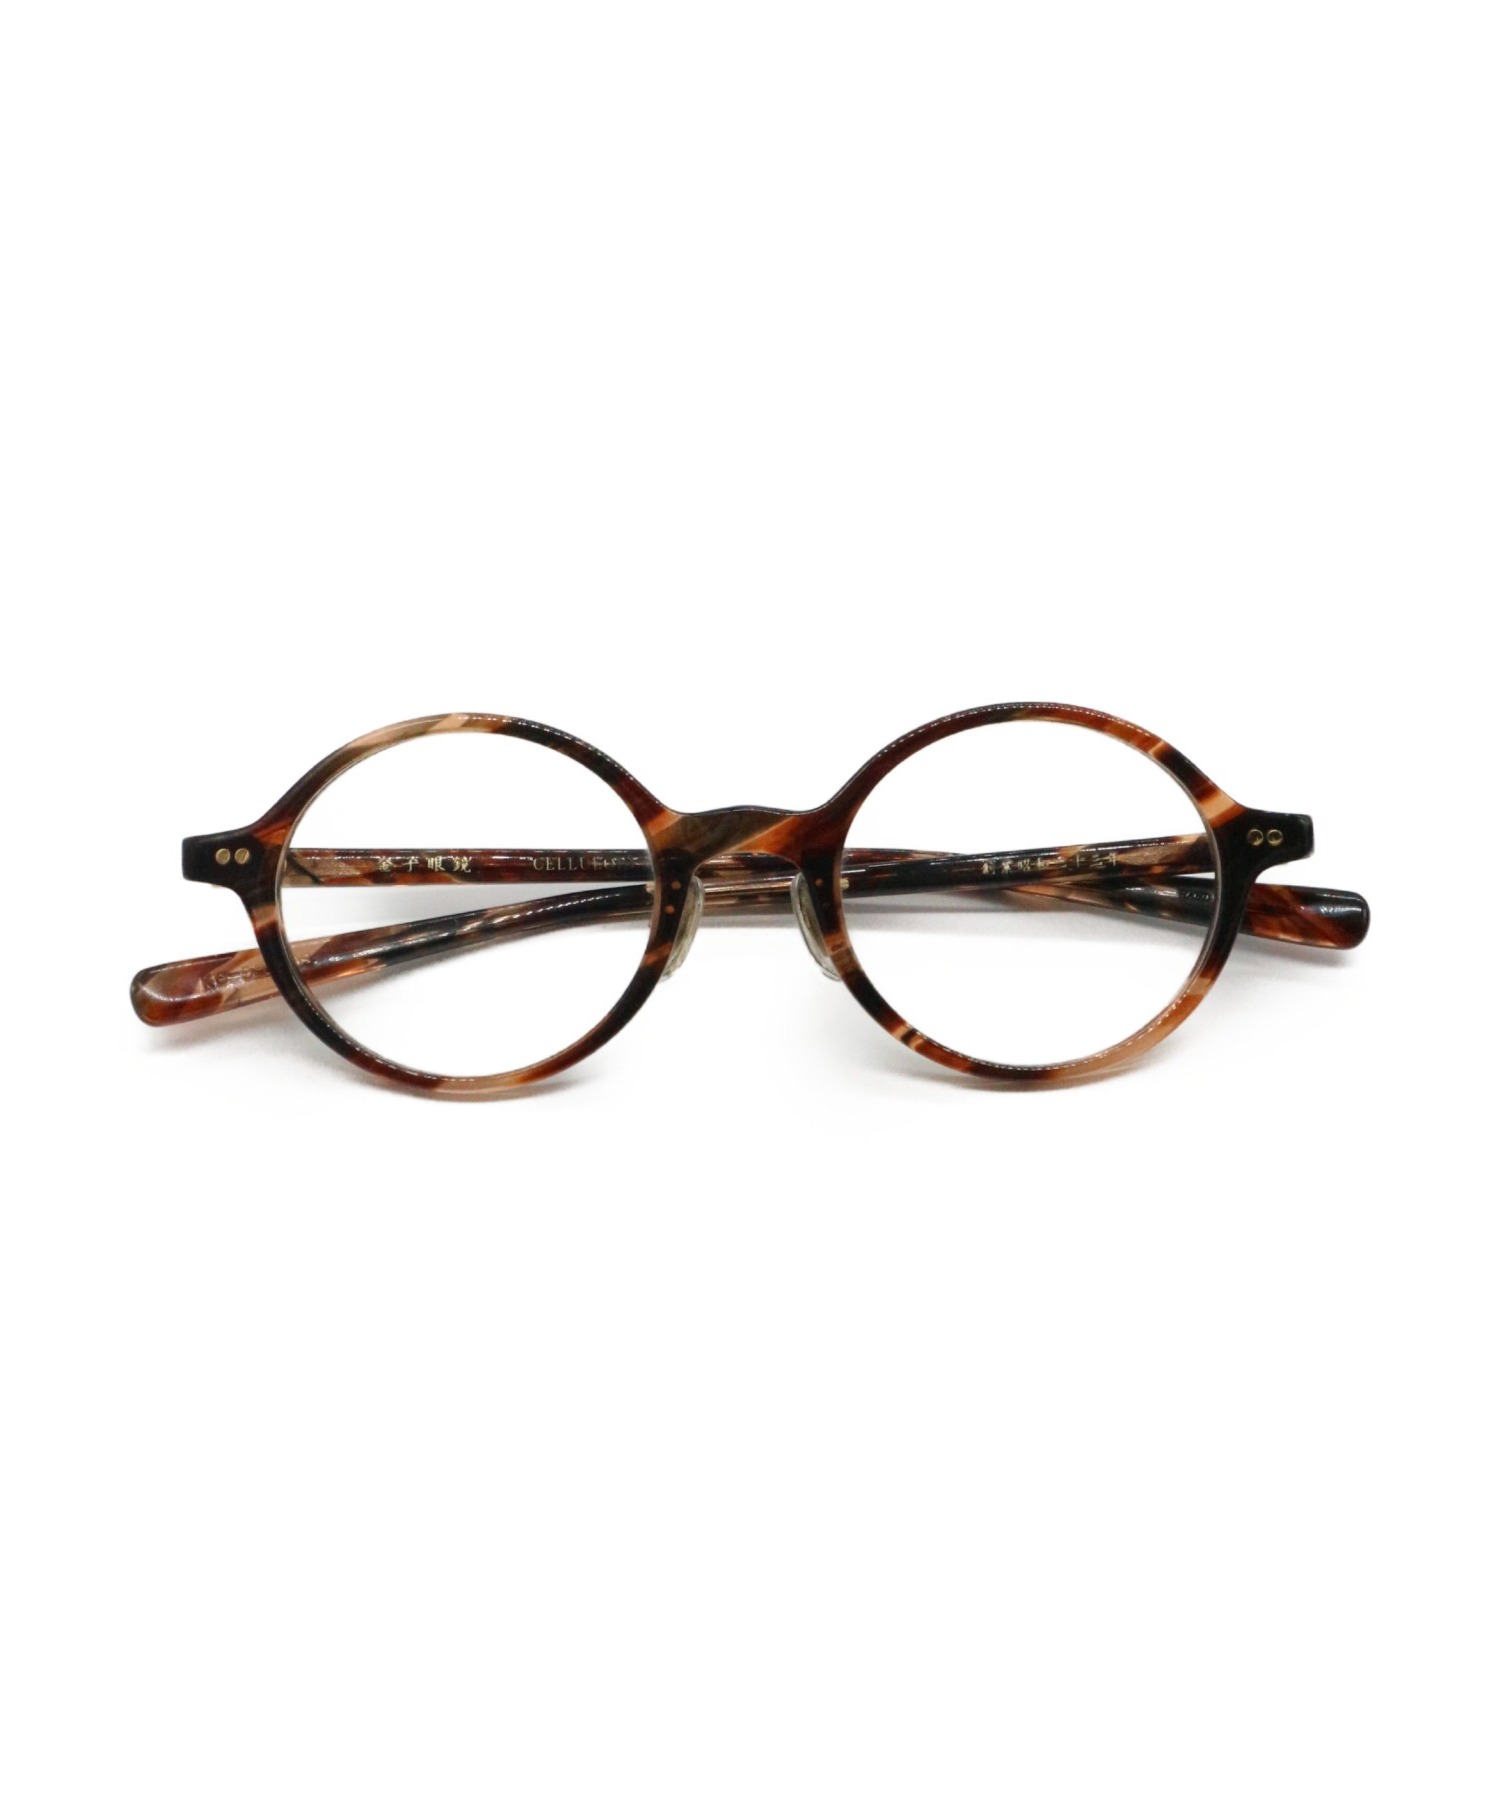 金子眼鏡(カネコメガネ) セルロイドフレーム サイズ[表記無]メガネ-